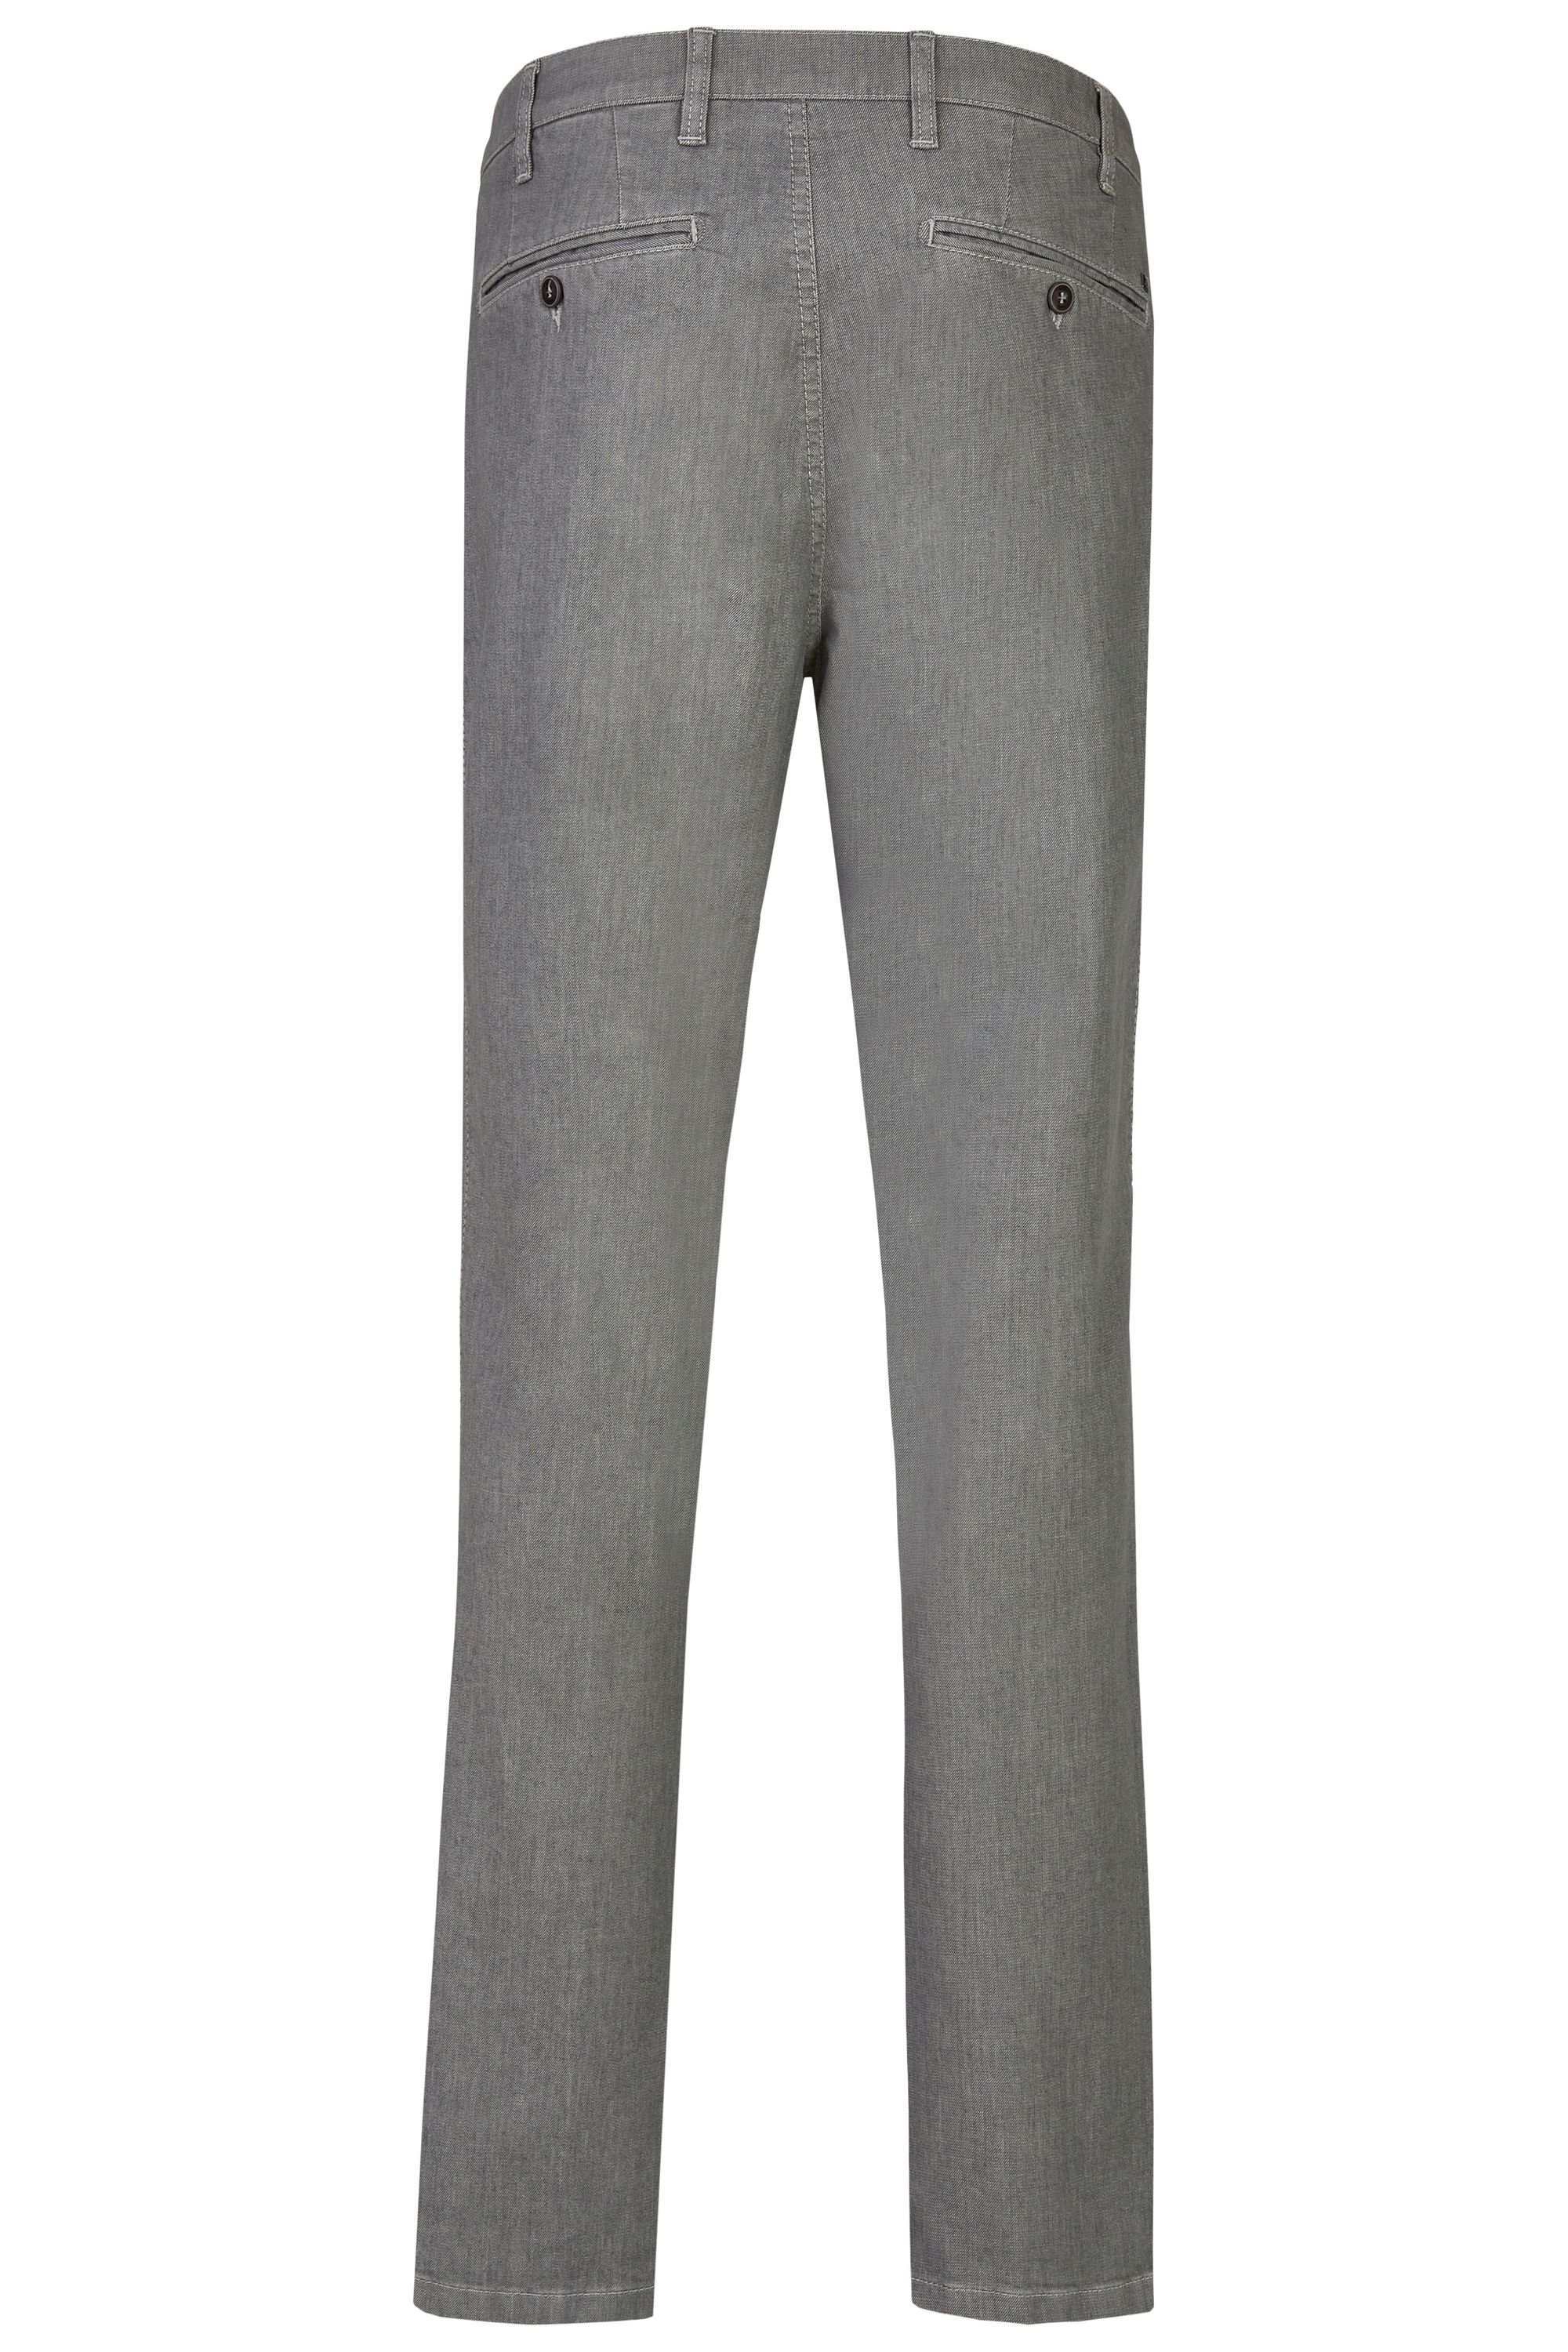 Sommer Jeans Bequeme Fit grey 577 Herren aus Jeans aubi: Flex Baumwolle aubi Perfect Stretch High Hose Modell (56)